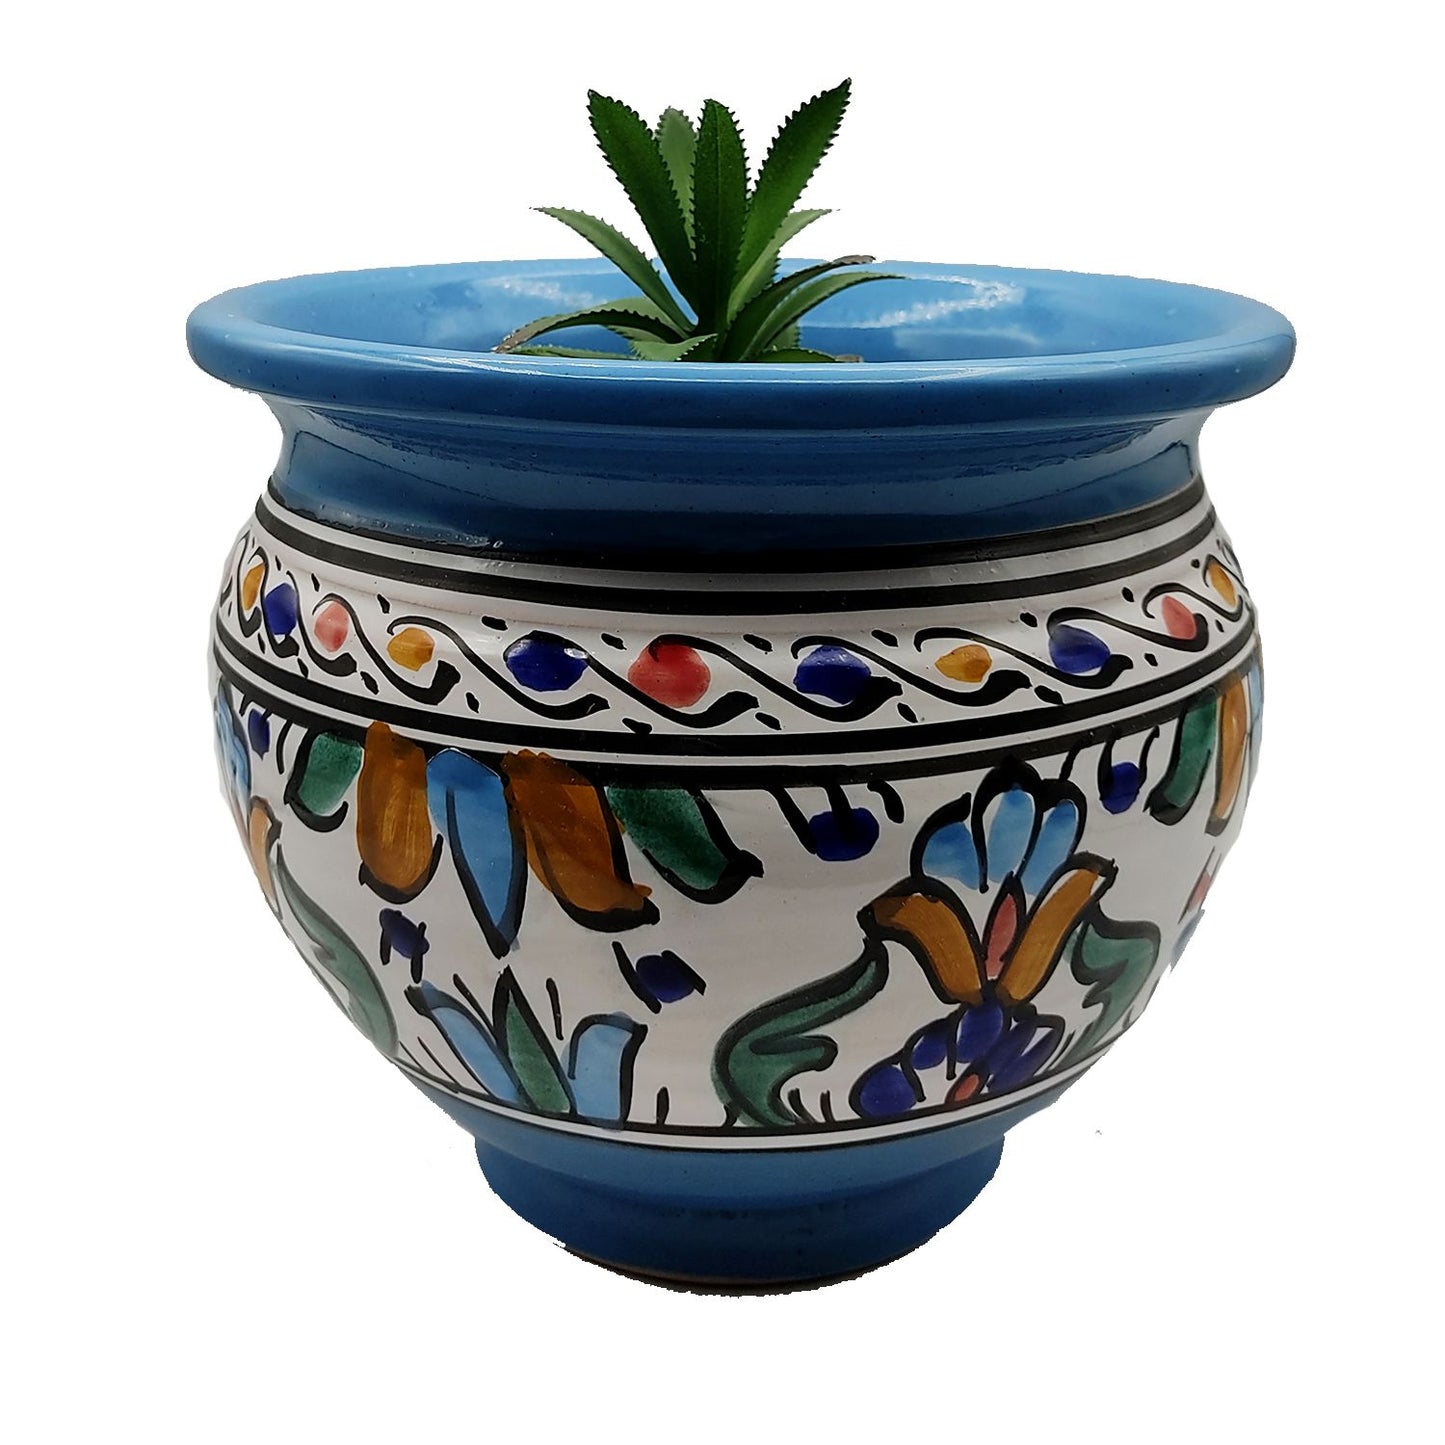 Vaso Cachepot Berbero Etnico Tunisno Marocchino Ceramica Terracotta Orientale 0411221010